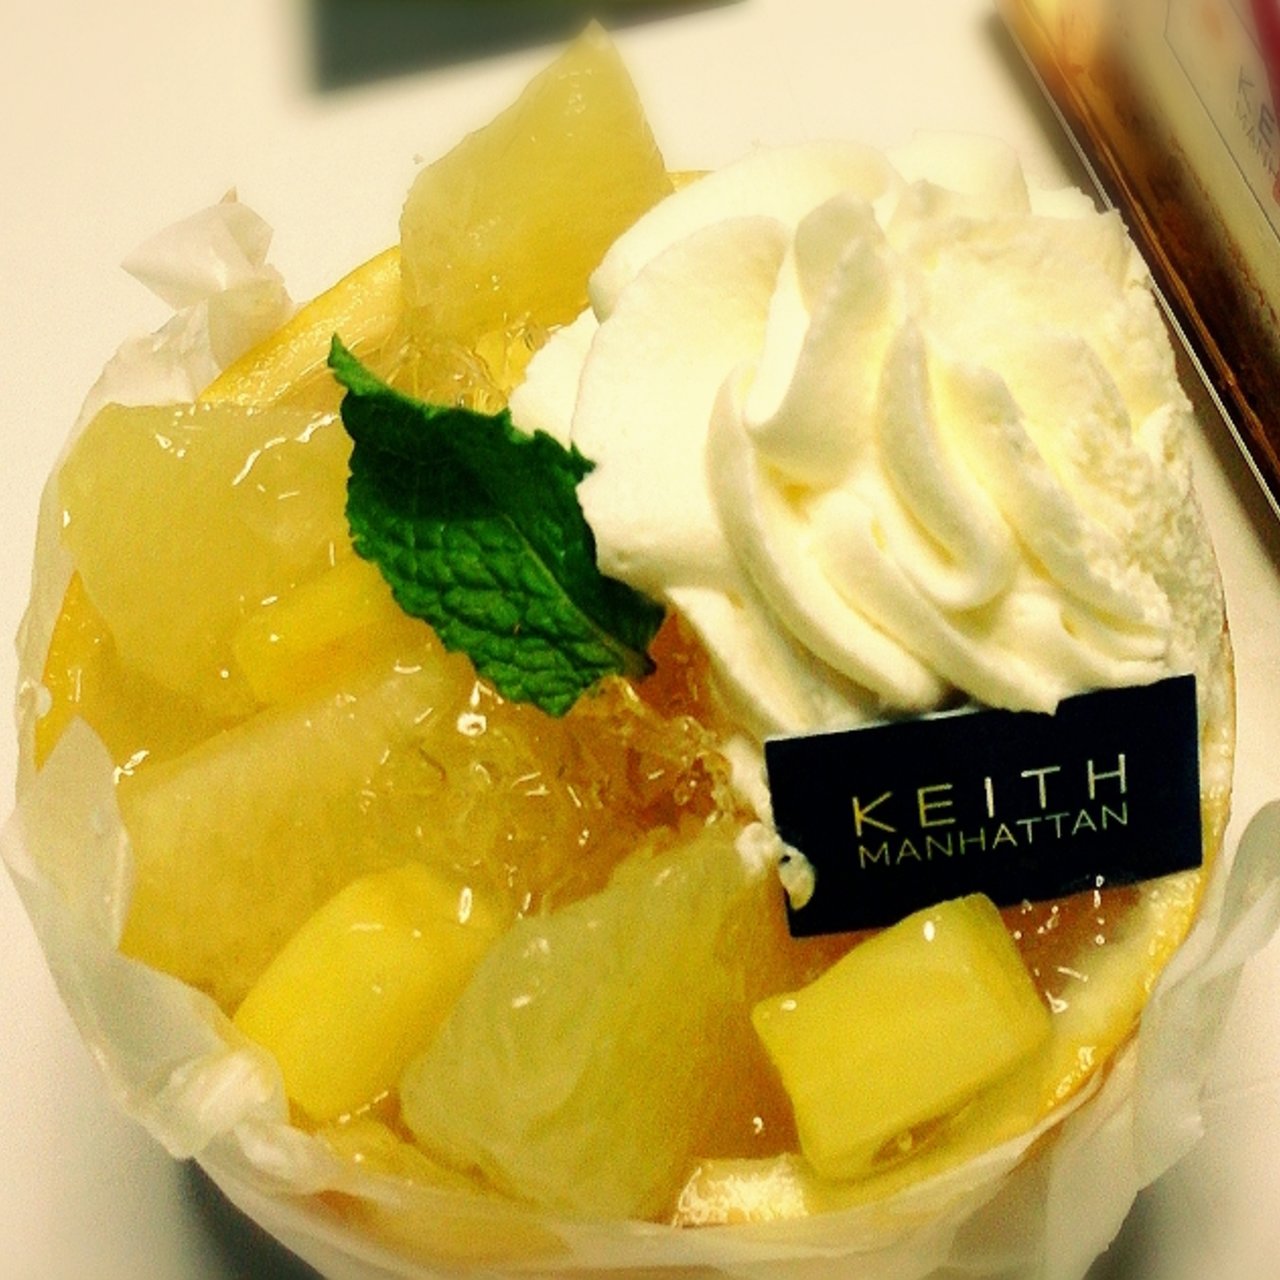 グレープフルーツのケーキ キース マンハッタン 大丸東京店 Keith Manhattan の口コミ一覧 おいしい一皿が集まるグルメコミュニティサービス Sarah